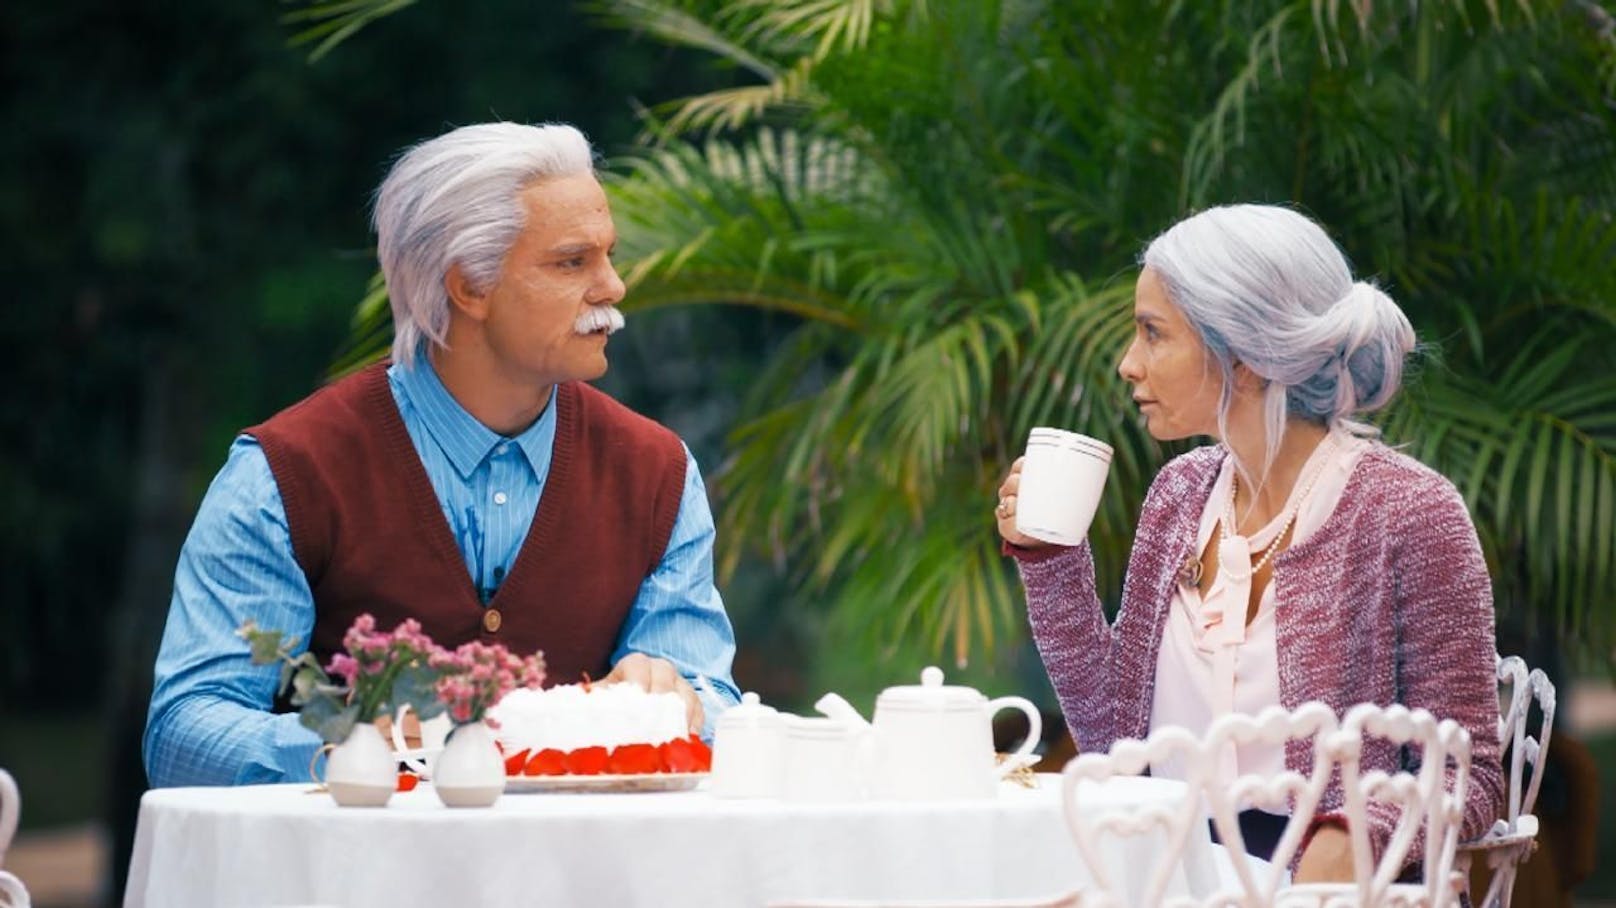 In der aktuellen Bachelor-Staffel Deutschland wurden Sebastian und Diana auf alt geschminkt. Bald könnten echte Pensionisten balzen.